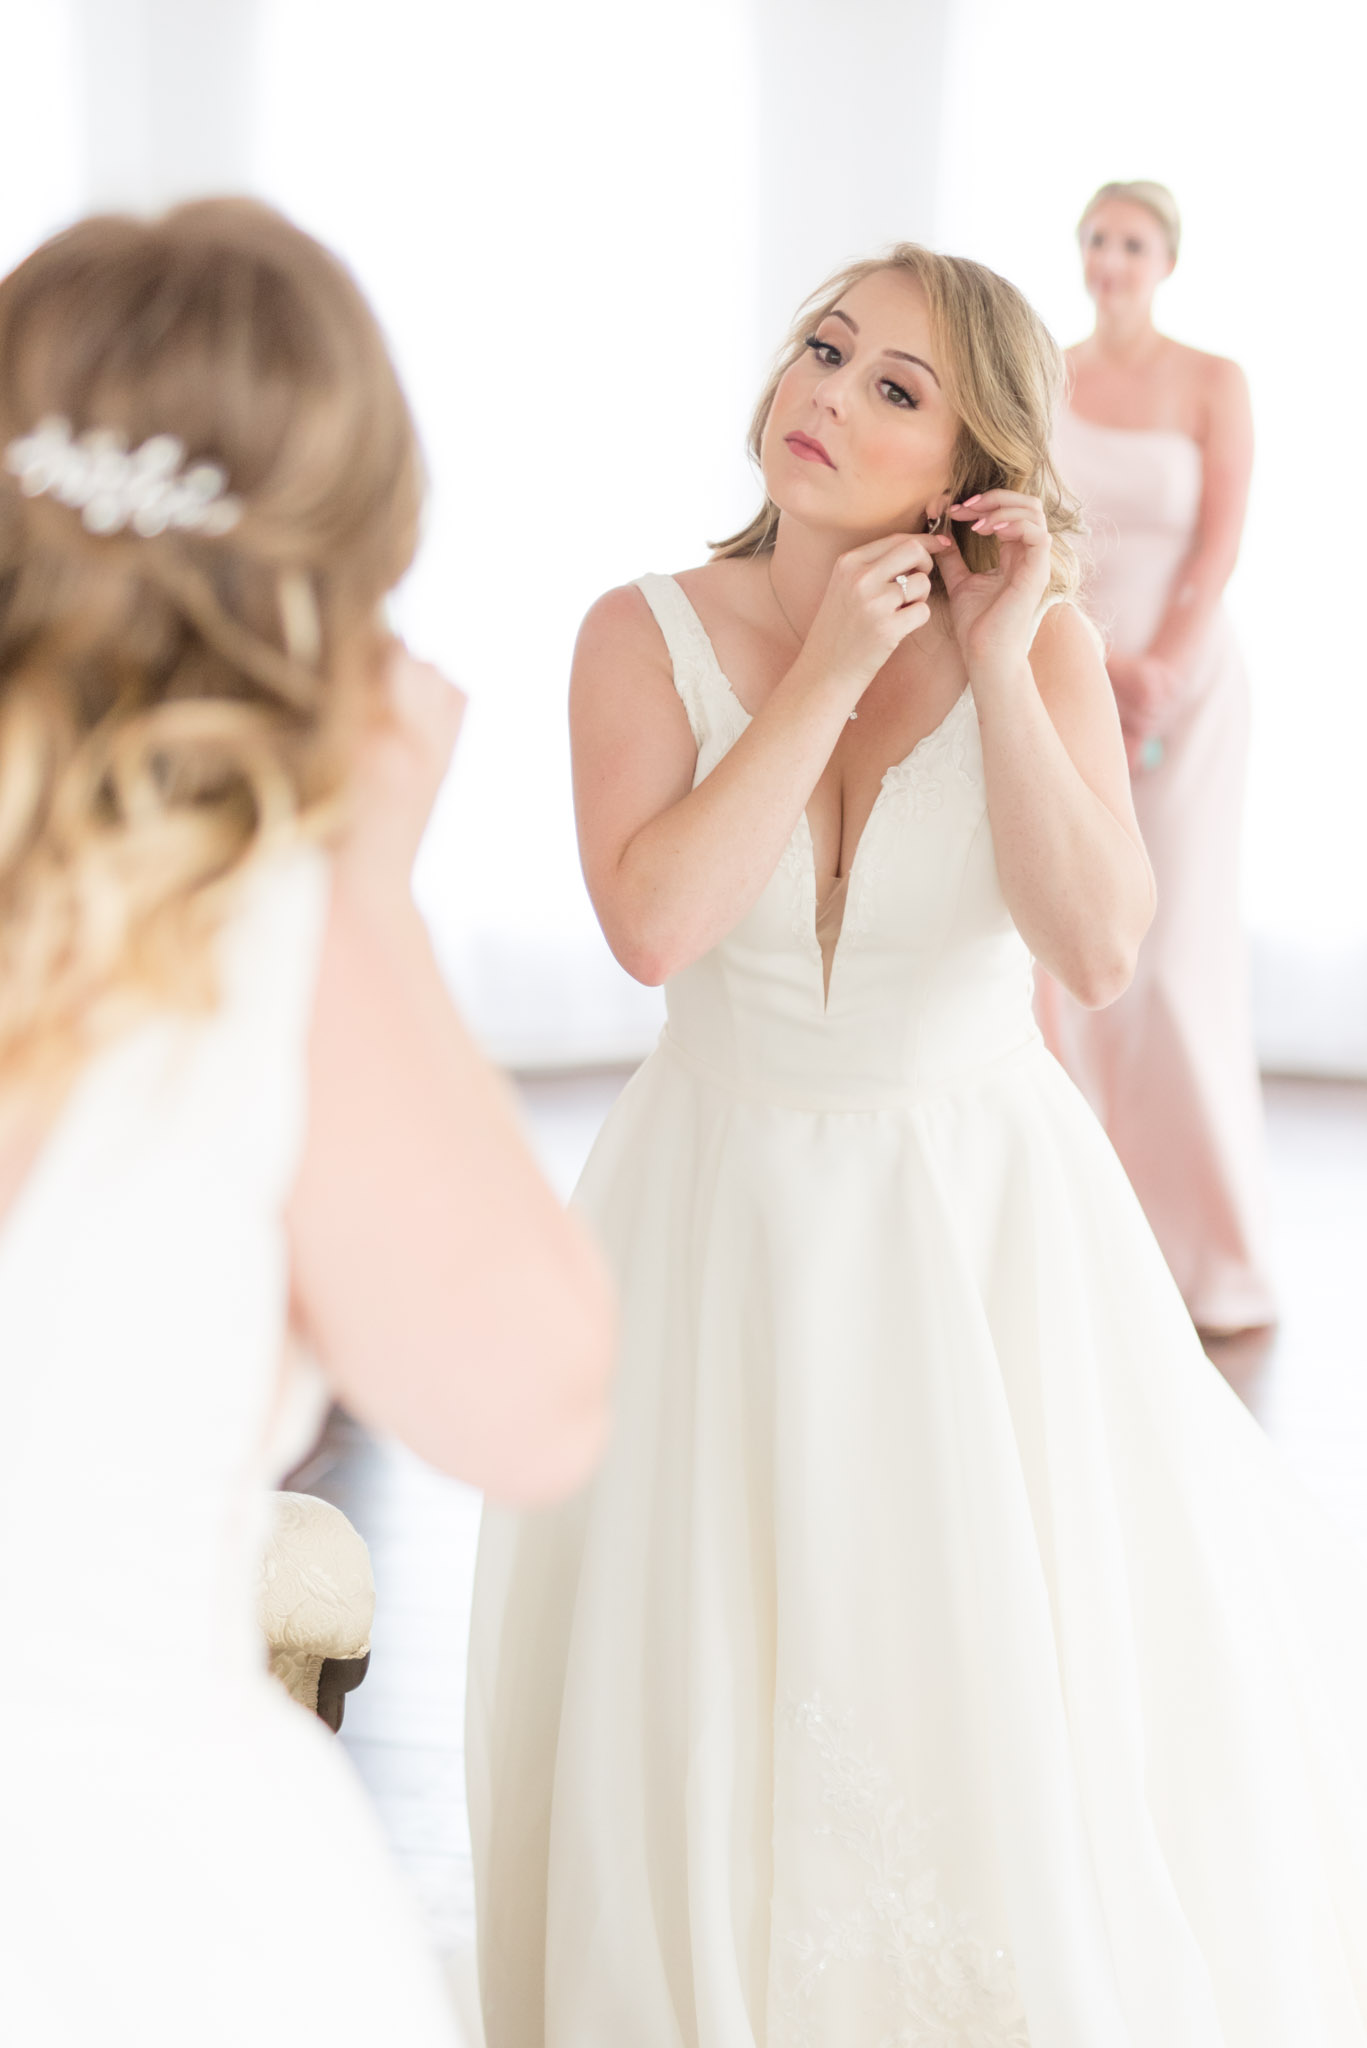 Bride puts in earrings in mirror.